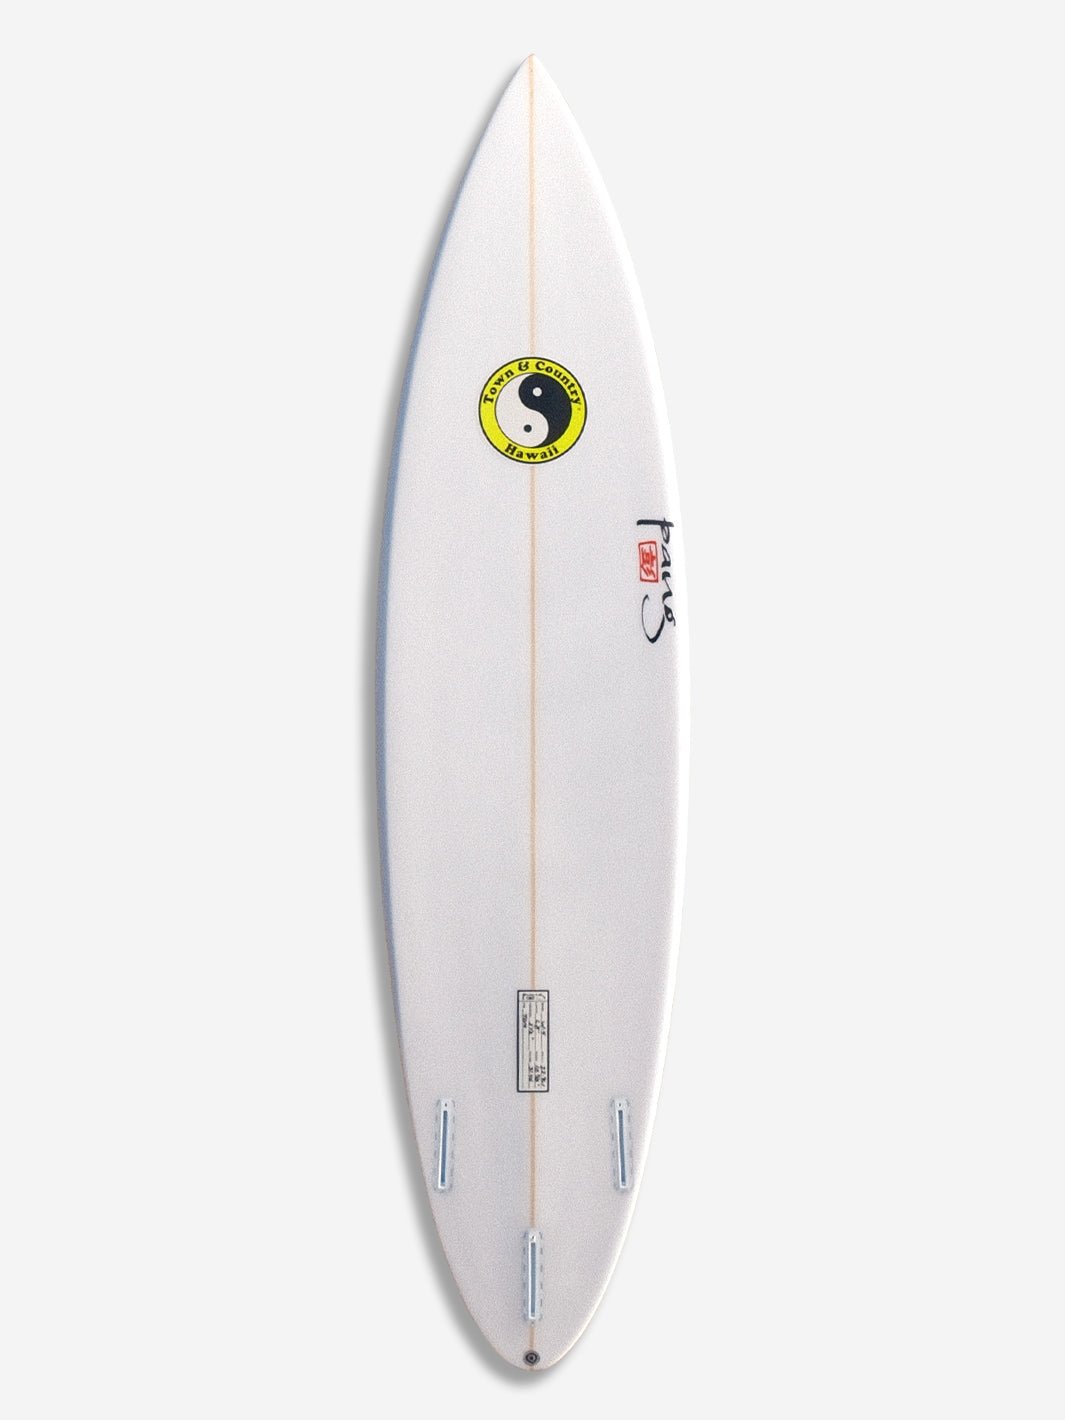 T&C Surf Designs W4, 